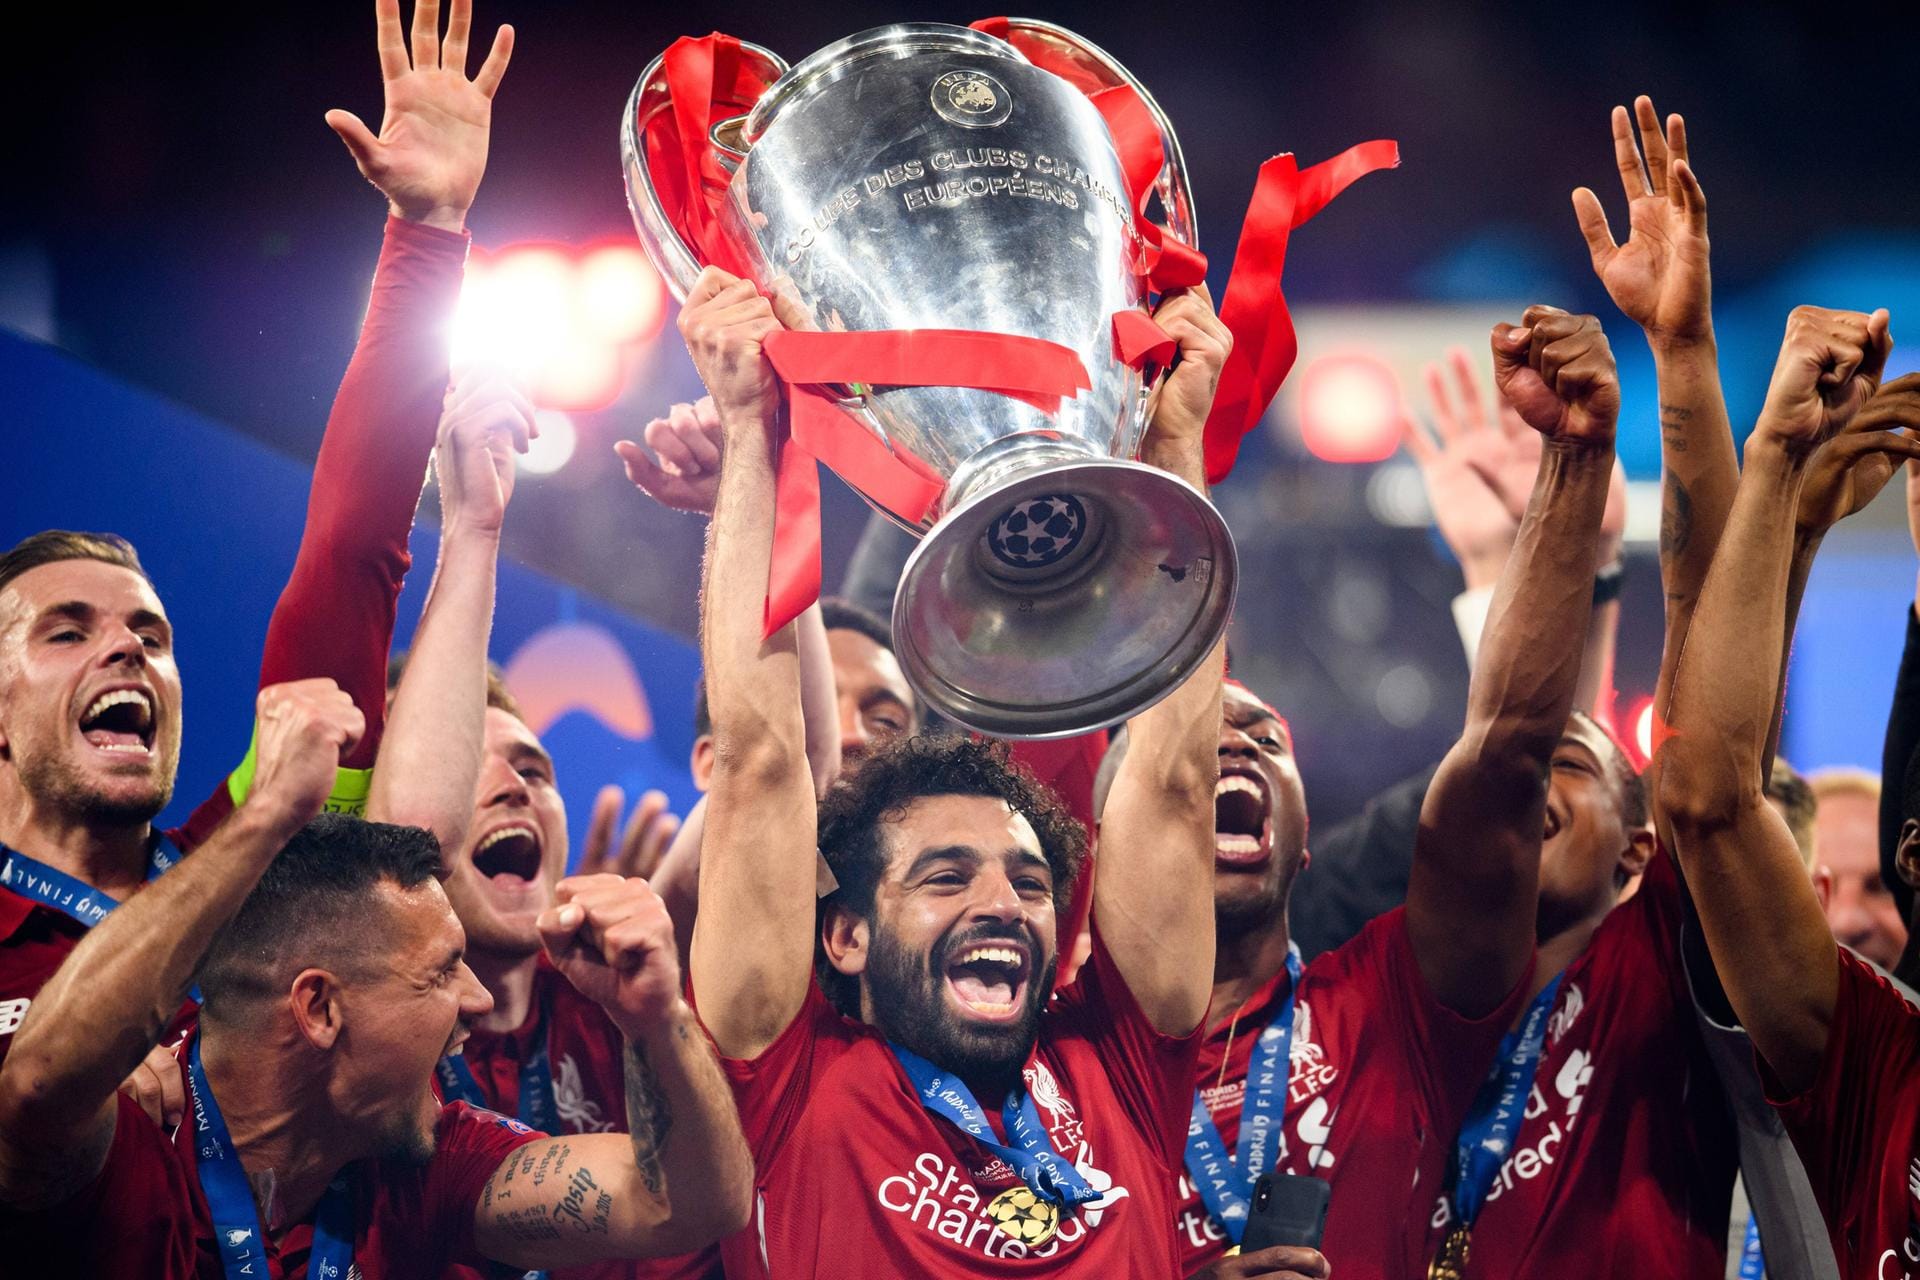 "The Sun" (Großbritannien): "Nach dem schmerzhaften Finale im letzten Jahr schießen Mohamed Salah und Divock Origi den FC Liverpool zum Champion."